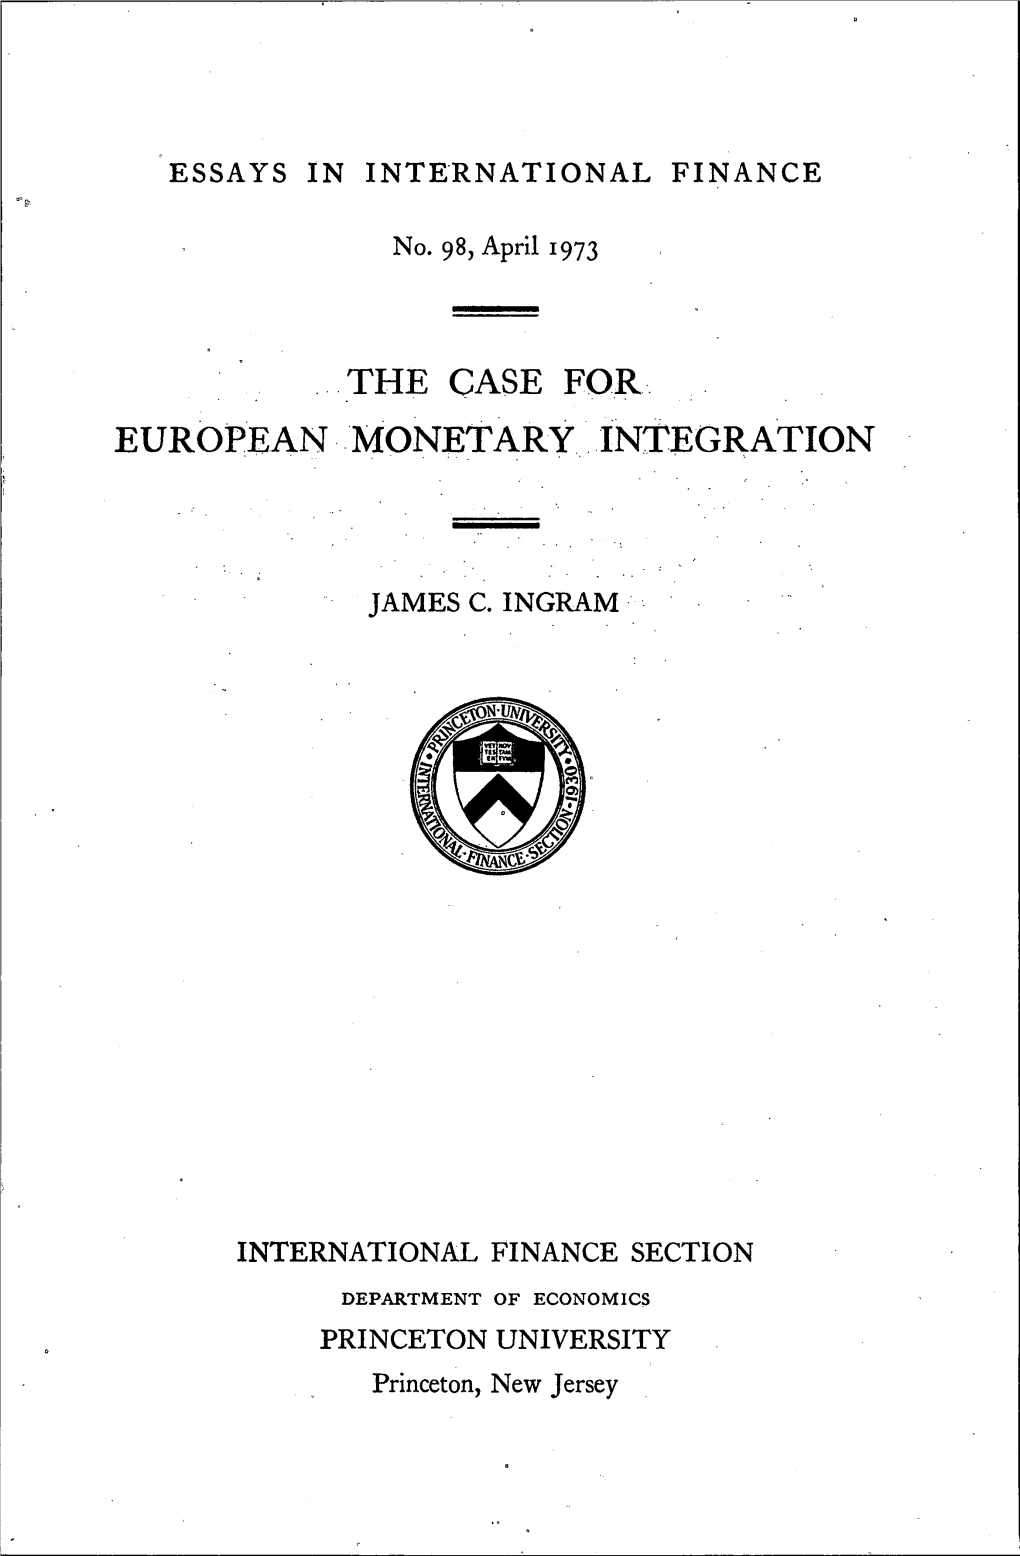 The Case for European Monetary Integration